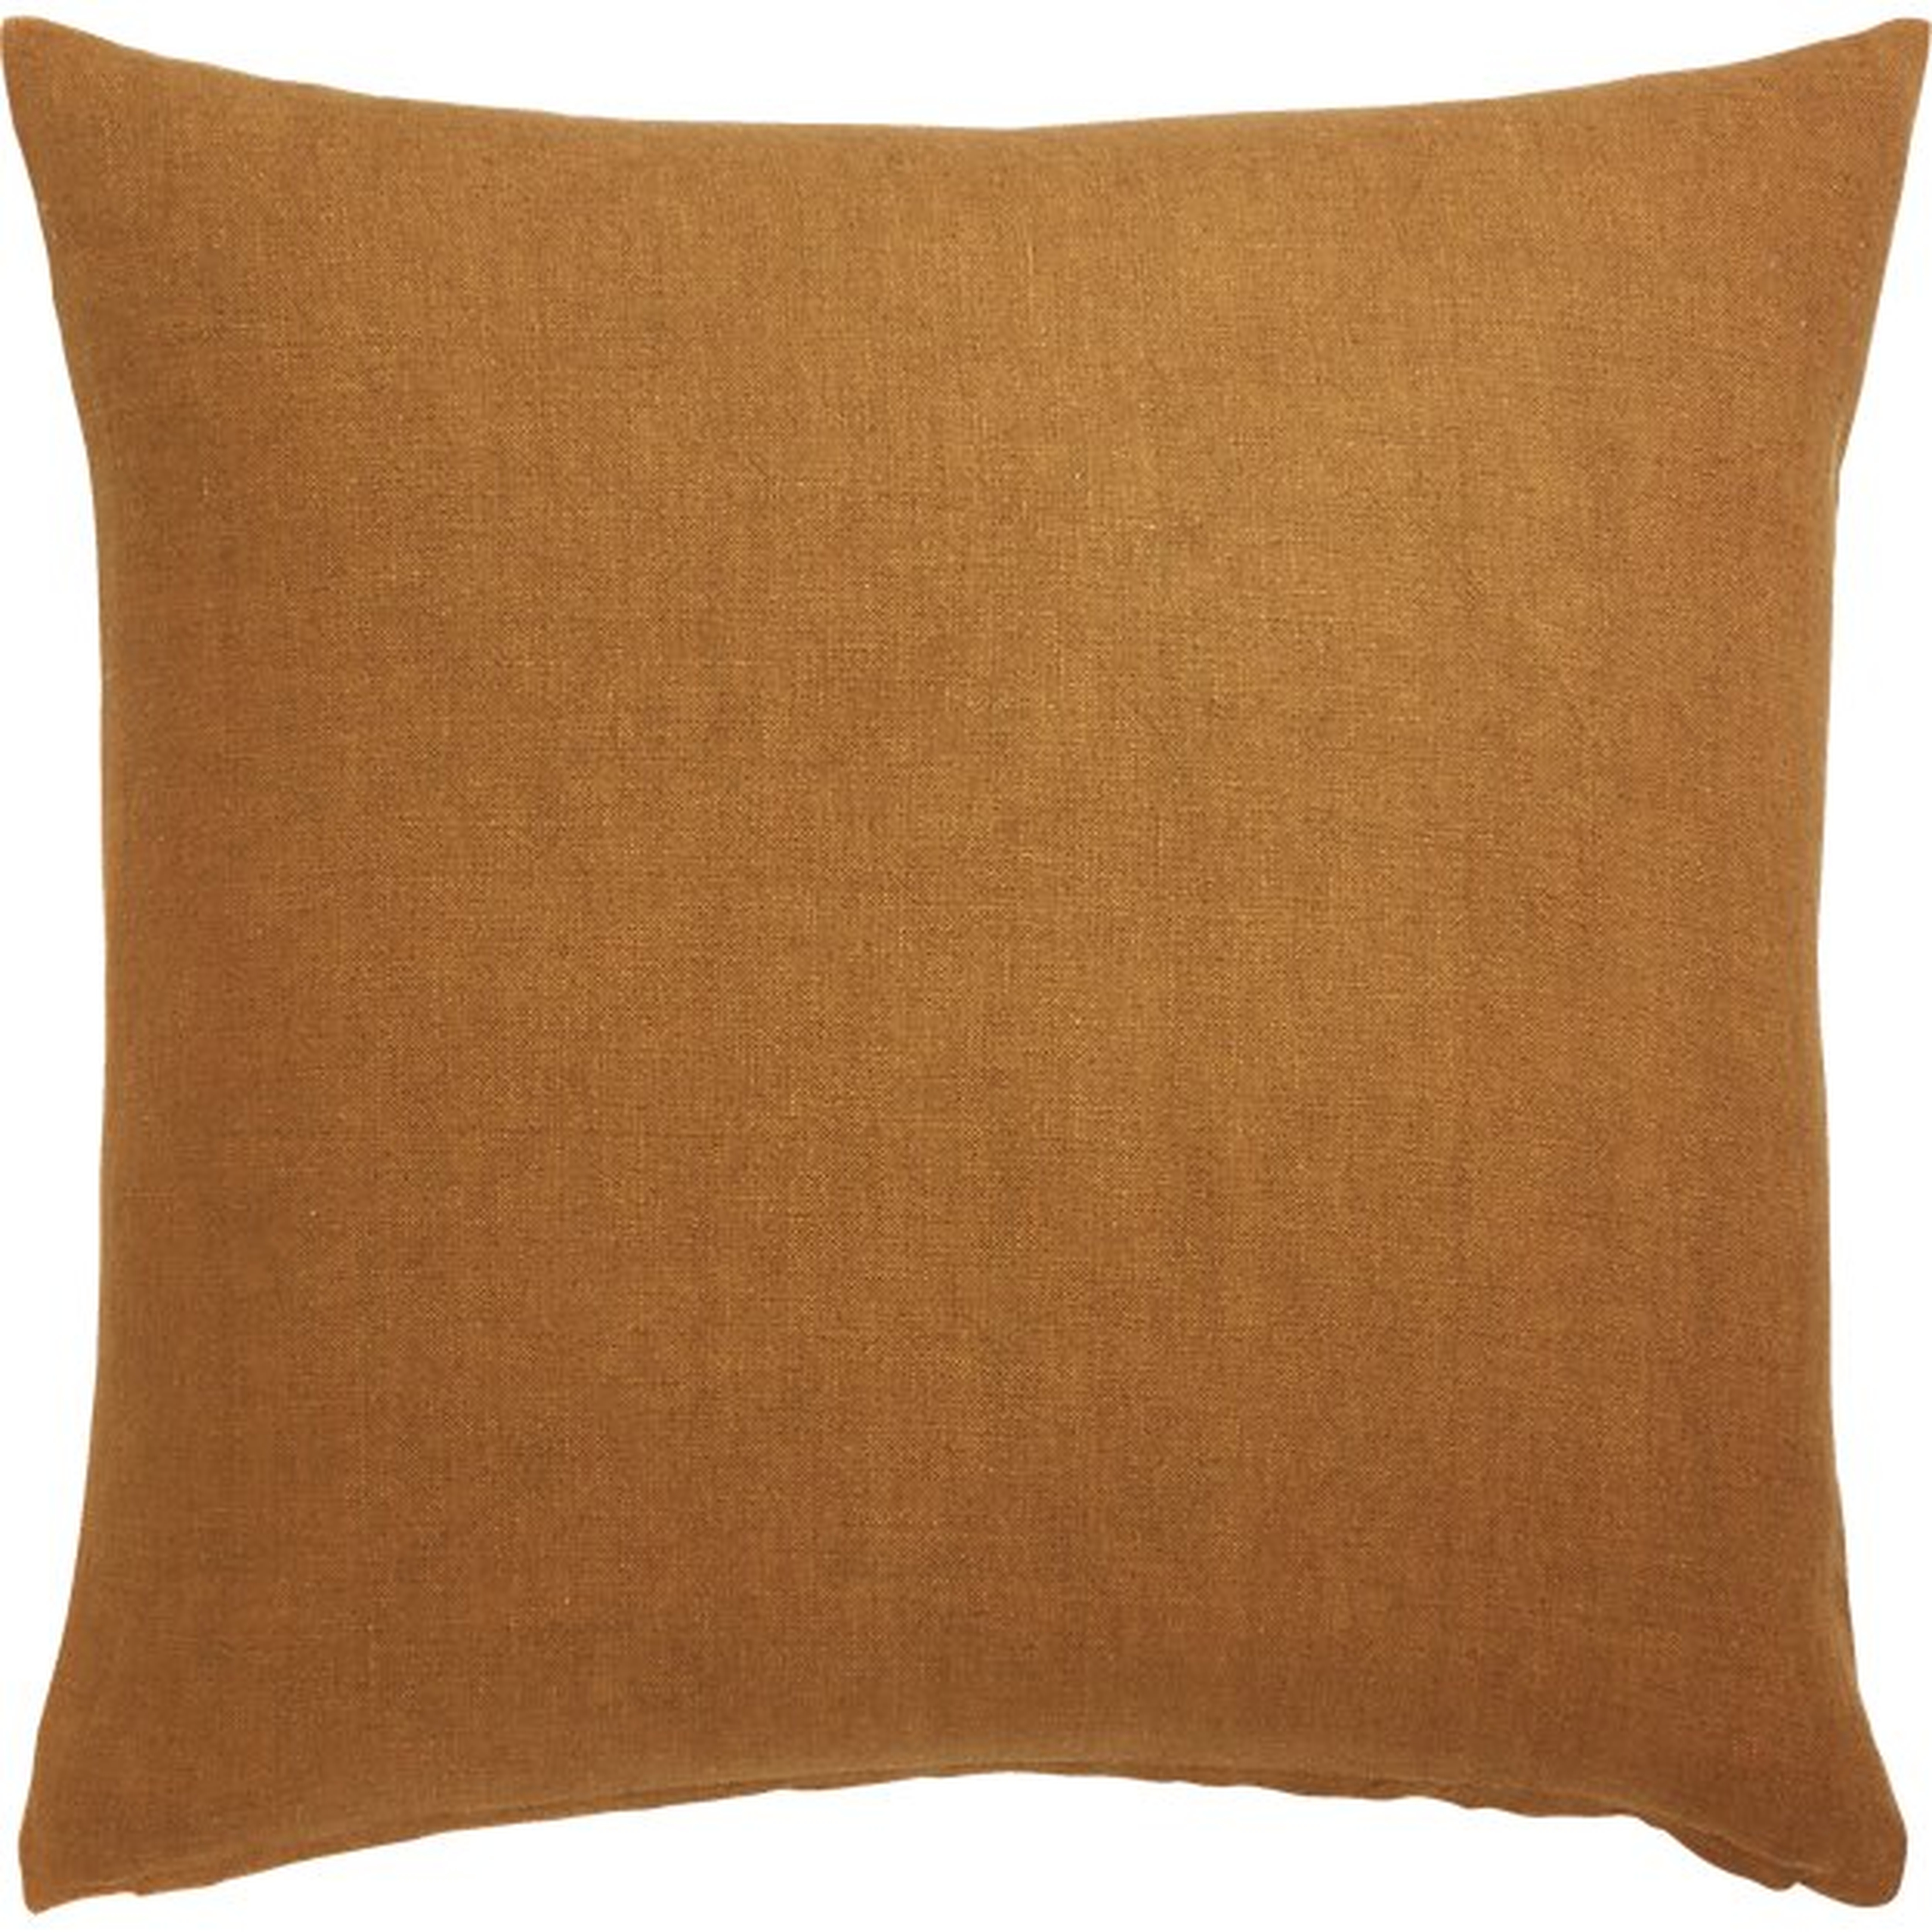 20" linon copper pillow with down alternative insert - CB2